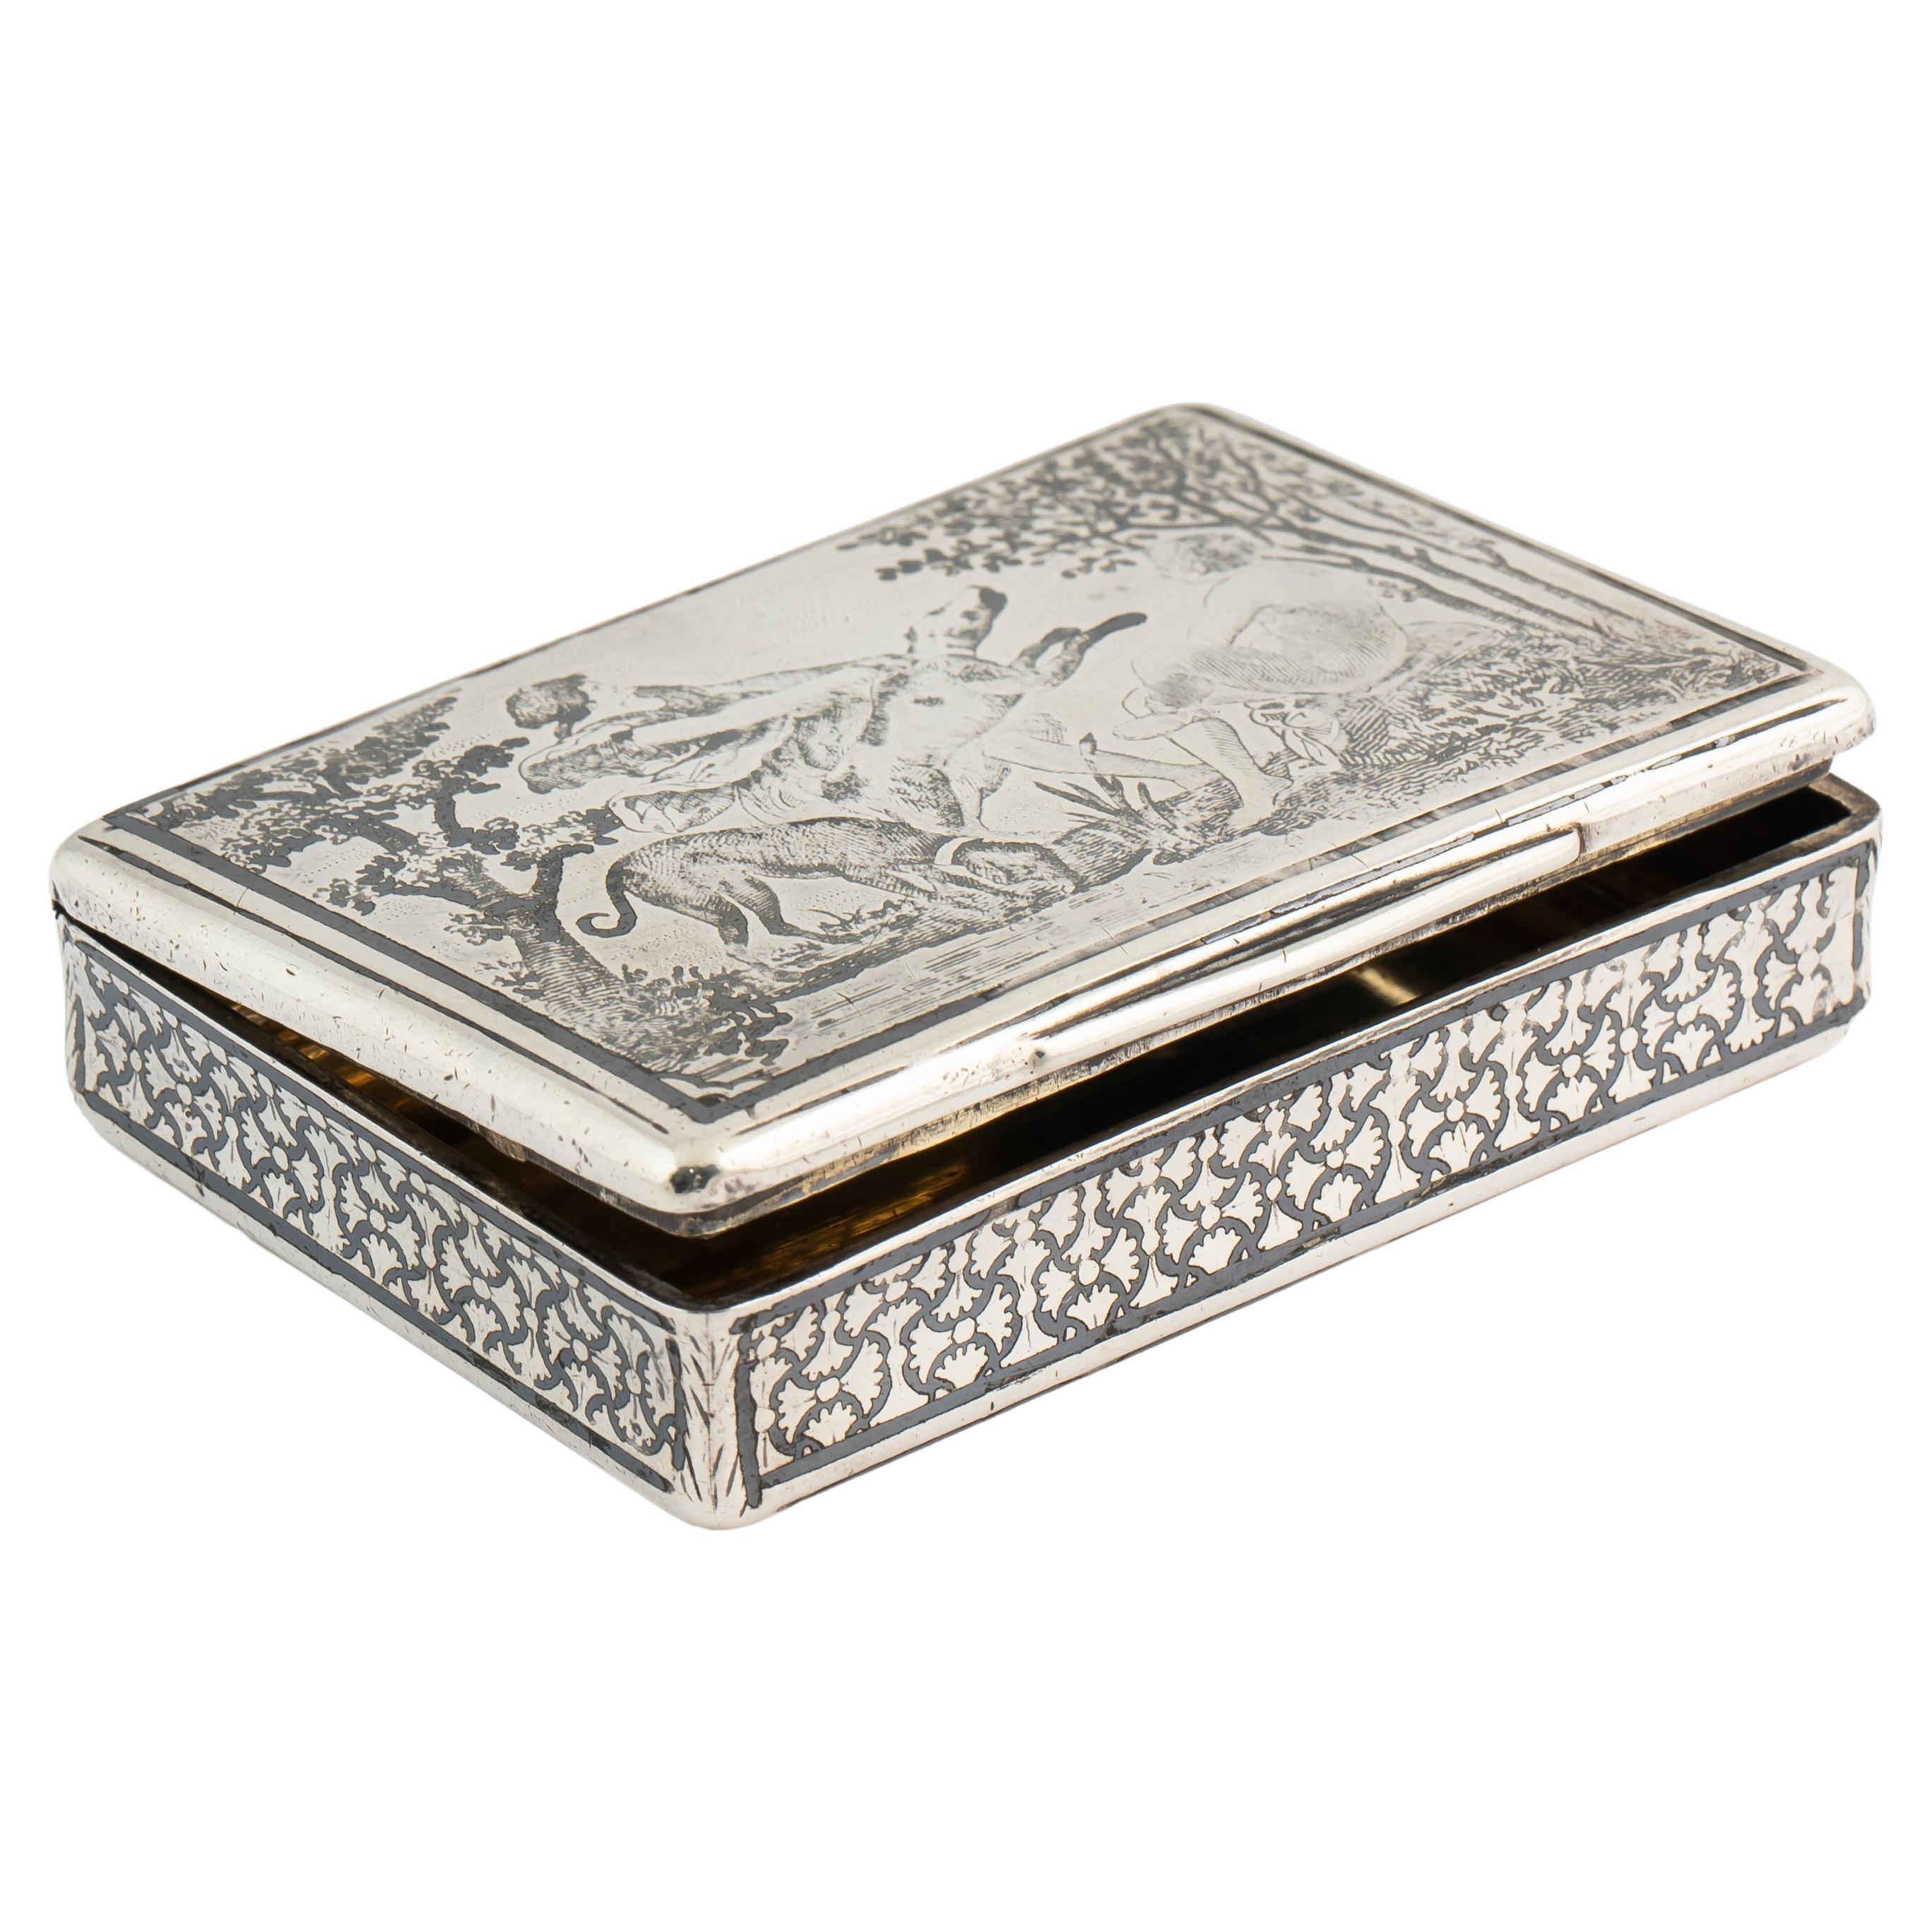 Französische Niello-Schnupftabakdose aus Silber, Jagdszene, frühes 19. Jahrhundert